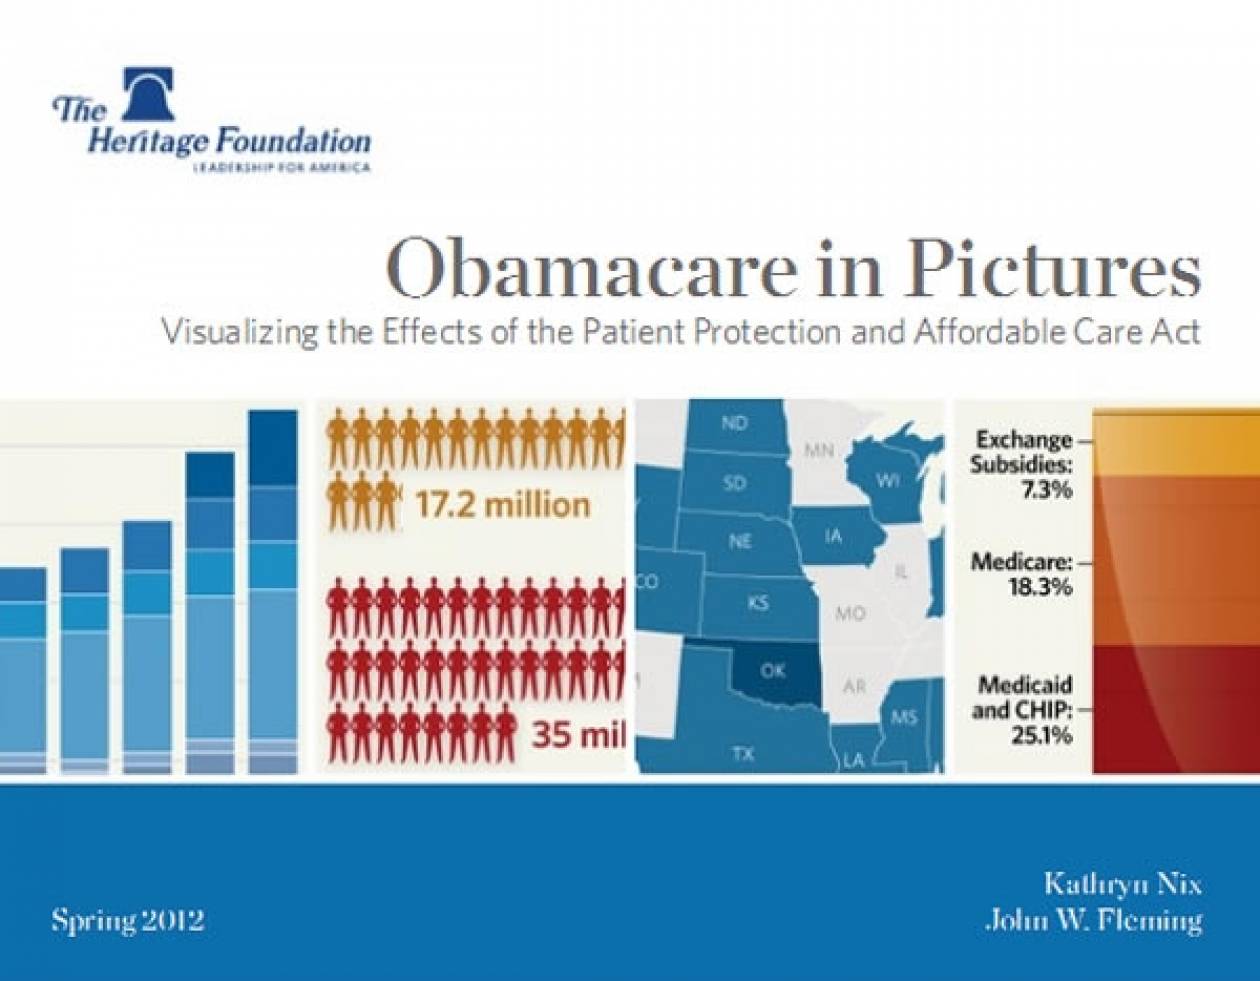 Επικριτική η Νάνσι Πελόσι για το "Obamacare"